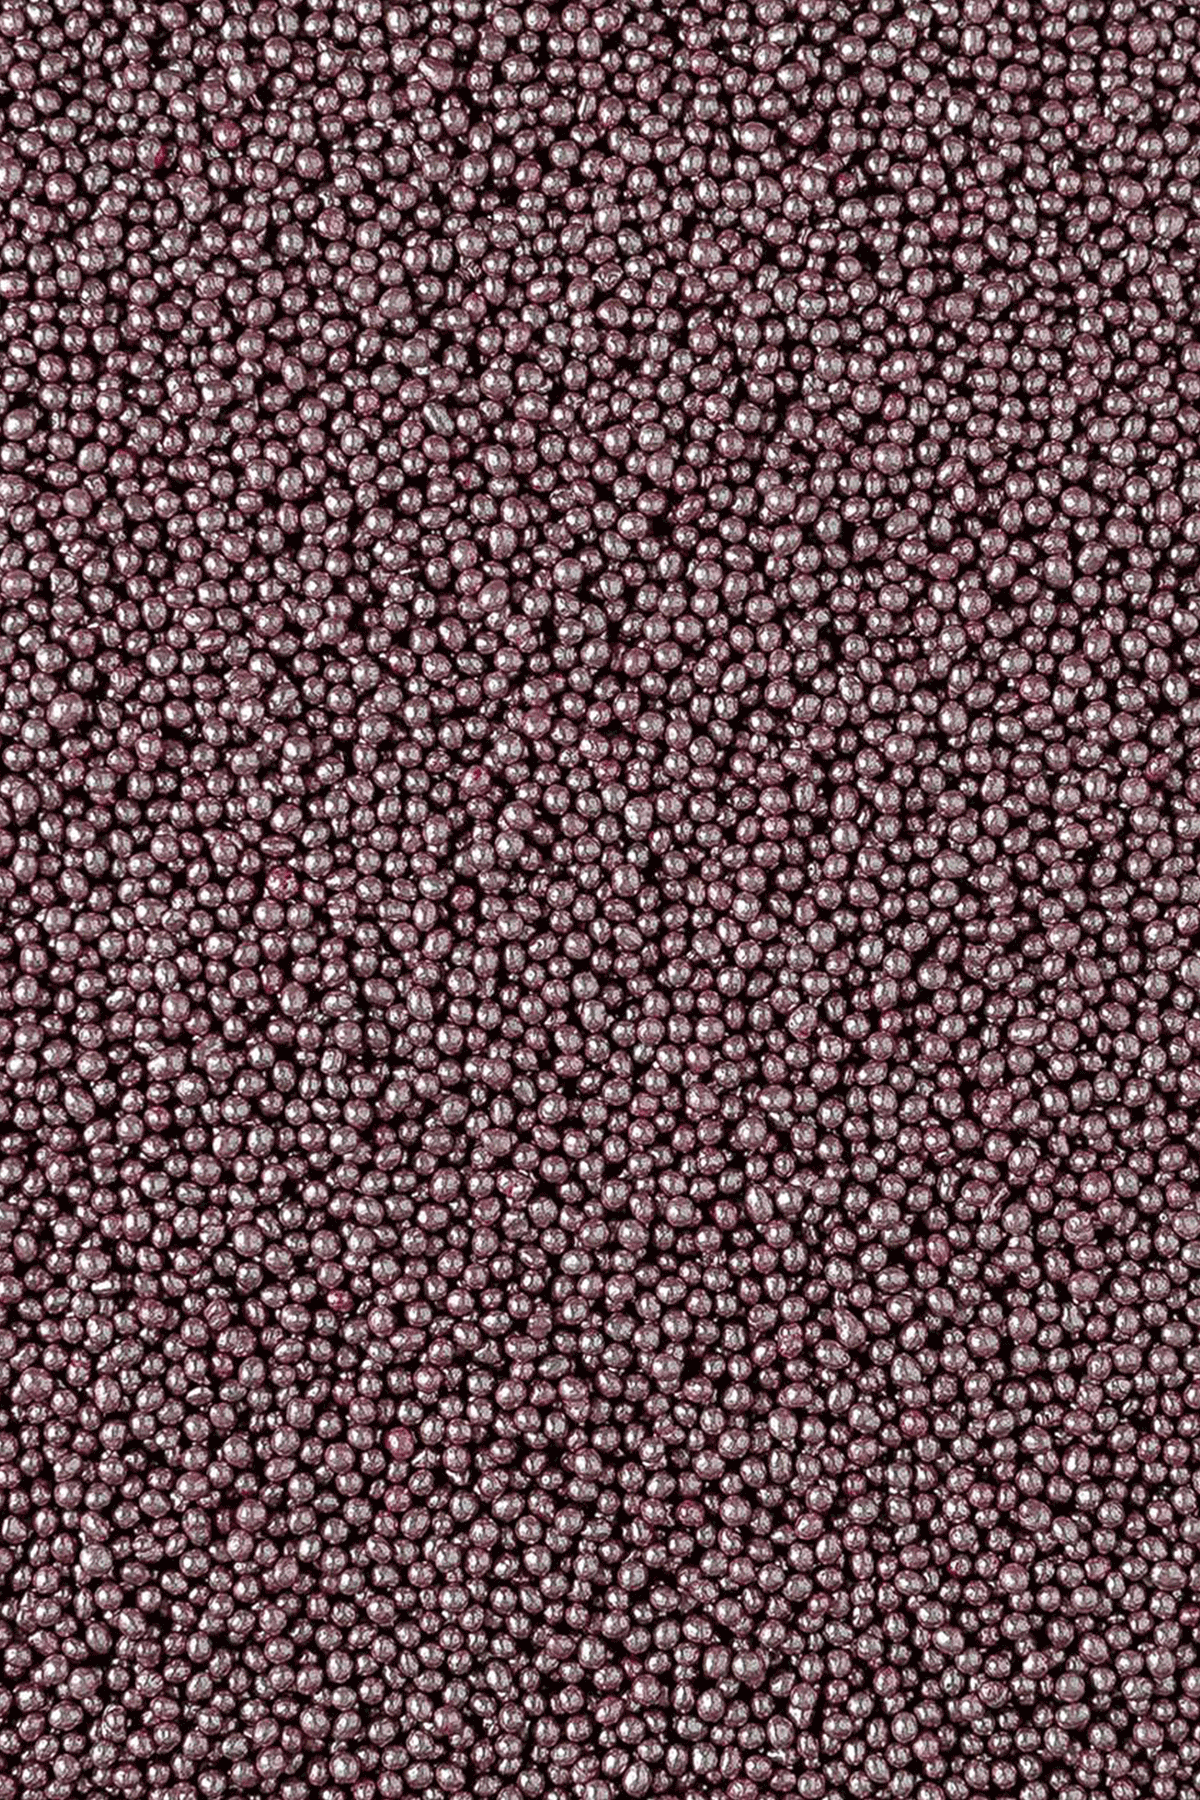 Metallic Pearls - Pink 2mm Sprinkles Sprinkly